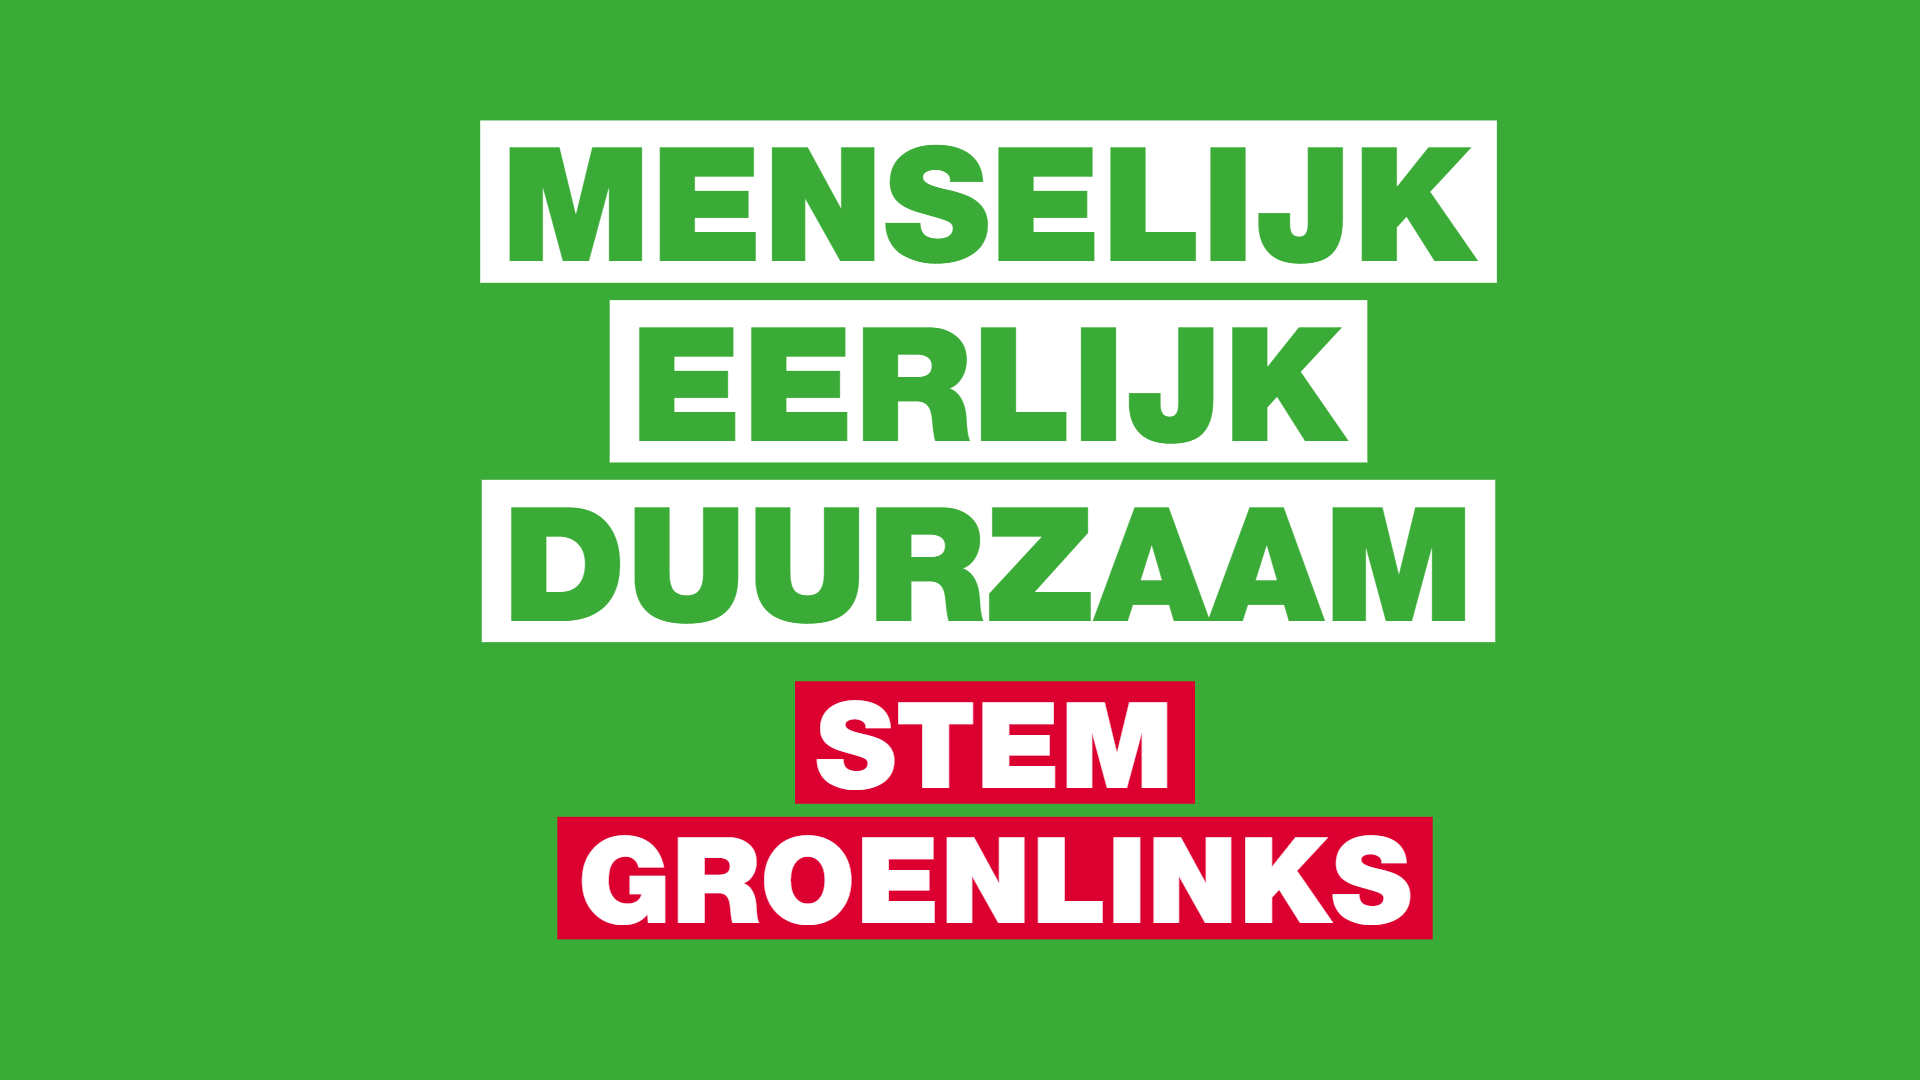 Menselijk eerlijk duurzaam Stem GroenLinks